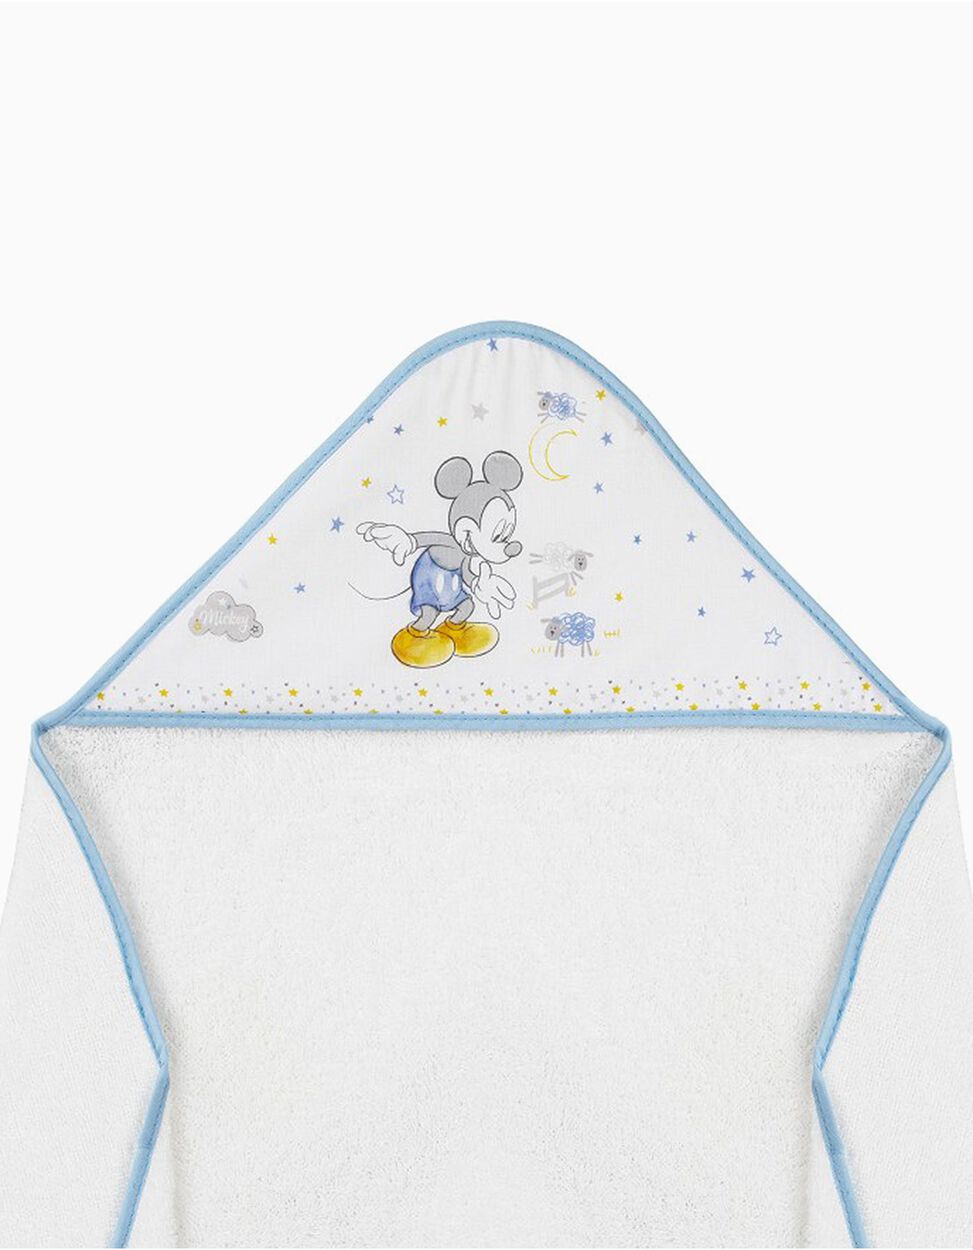 Toalla de Baño Mickey Disney White/Blue 100X100 cm